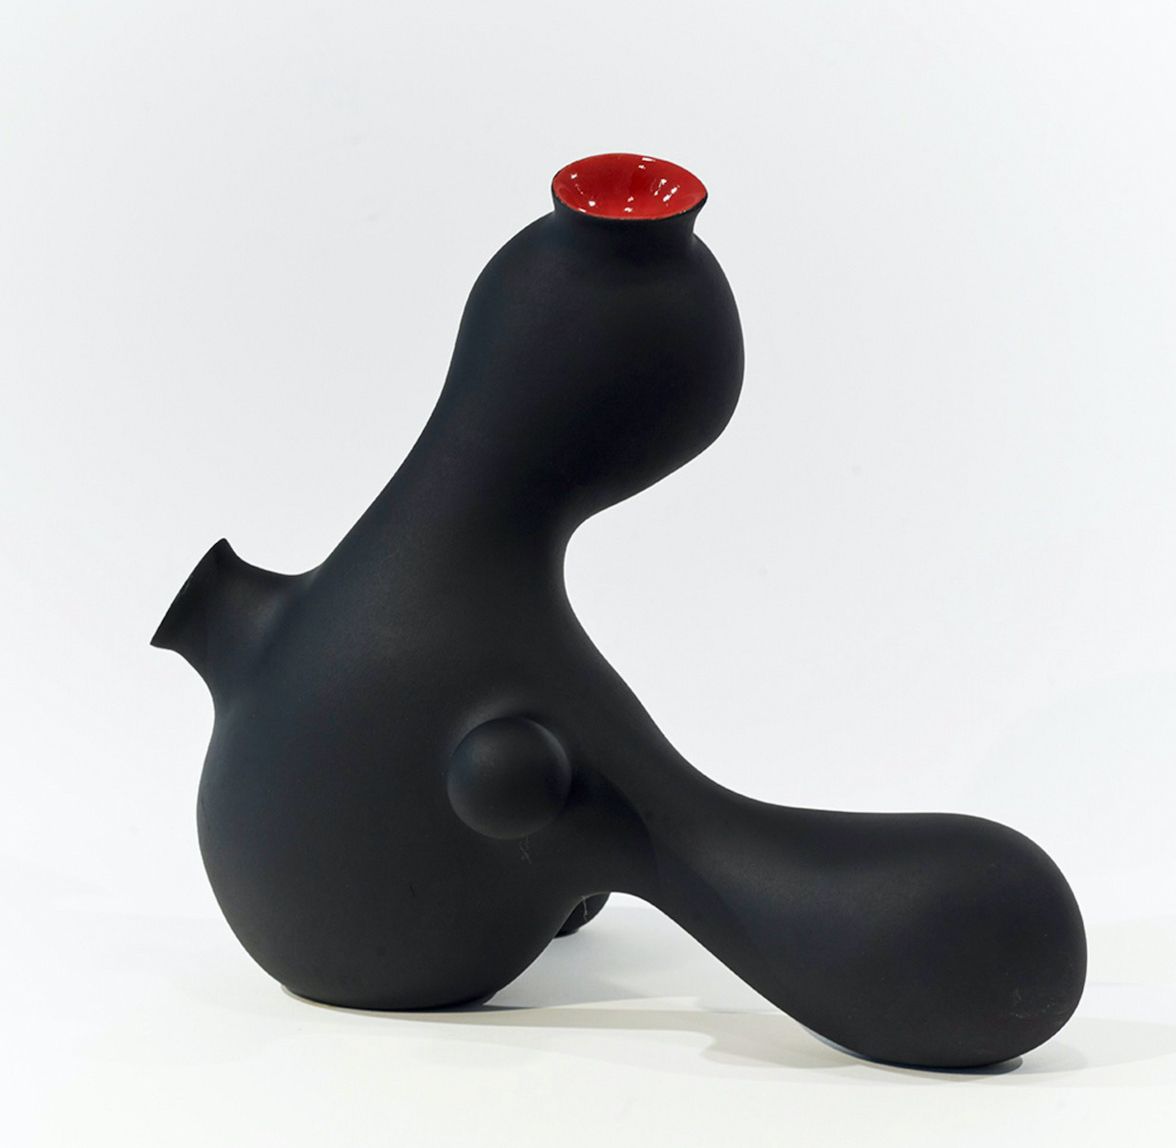 Pe Hagen abstract black sculpture spherical